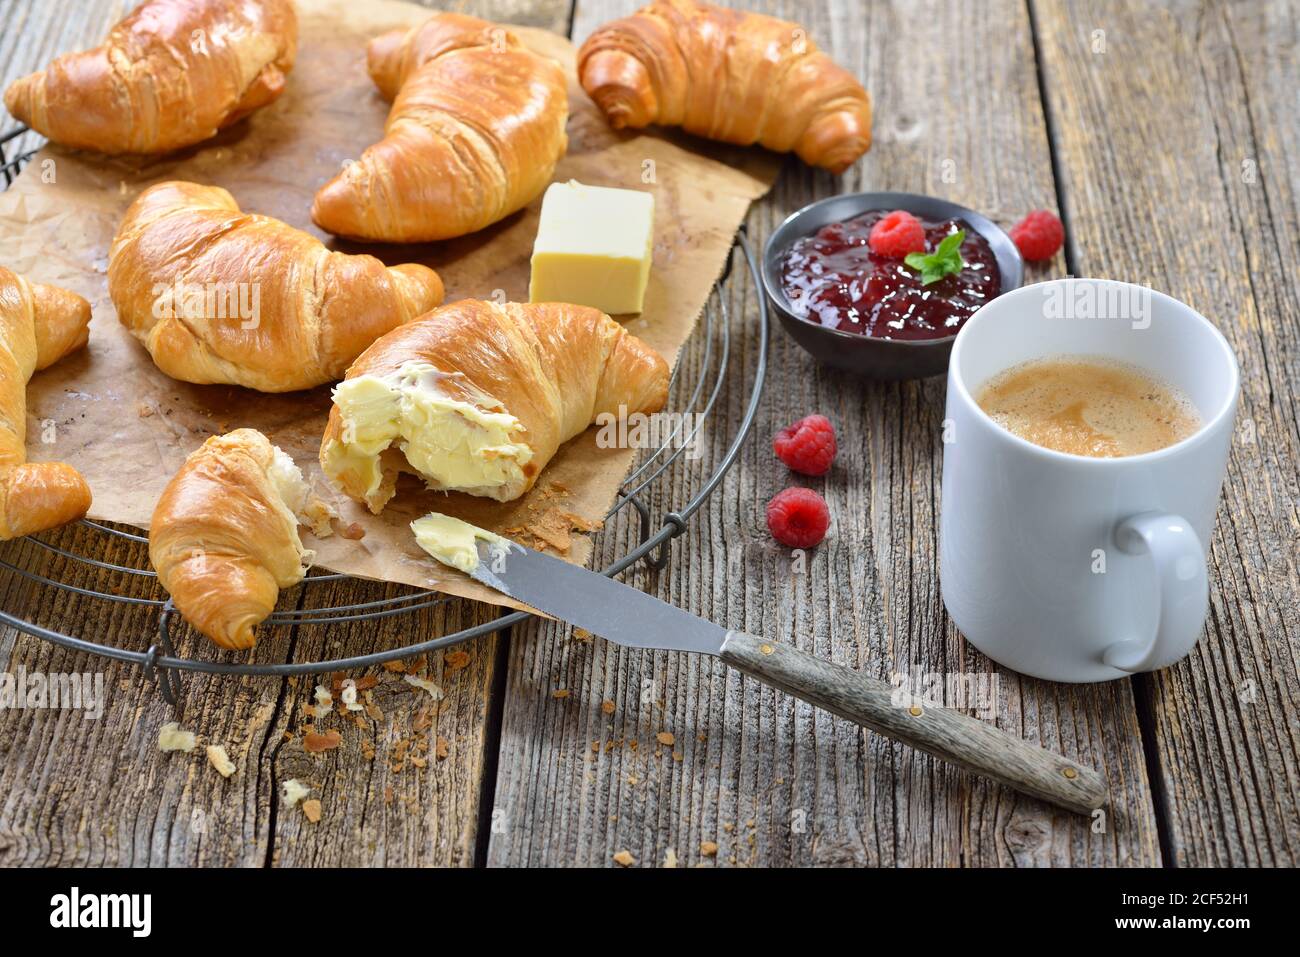 Frühstück mit frisch gebackenen Croissants auf einem Kühlregal, serviert mit Butter, Marmelade und einer Tasse Kaffee-Creme Stockfoto